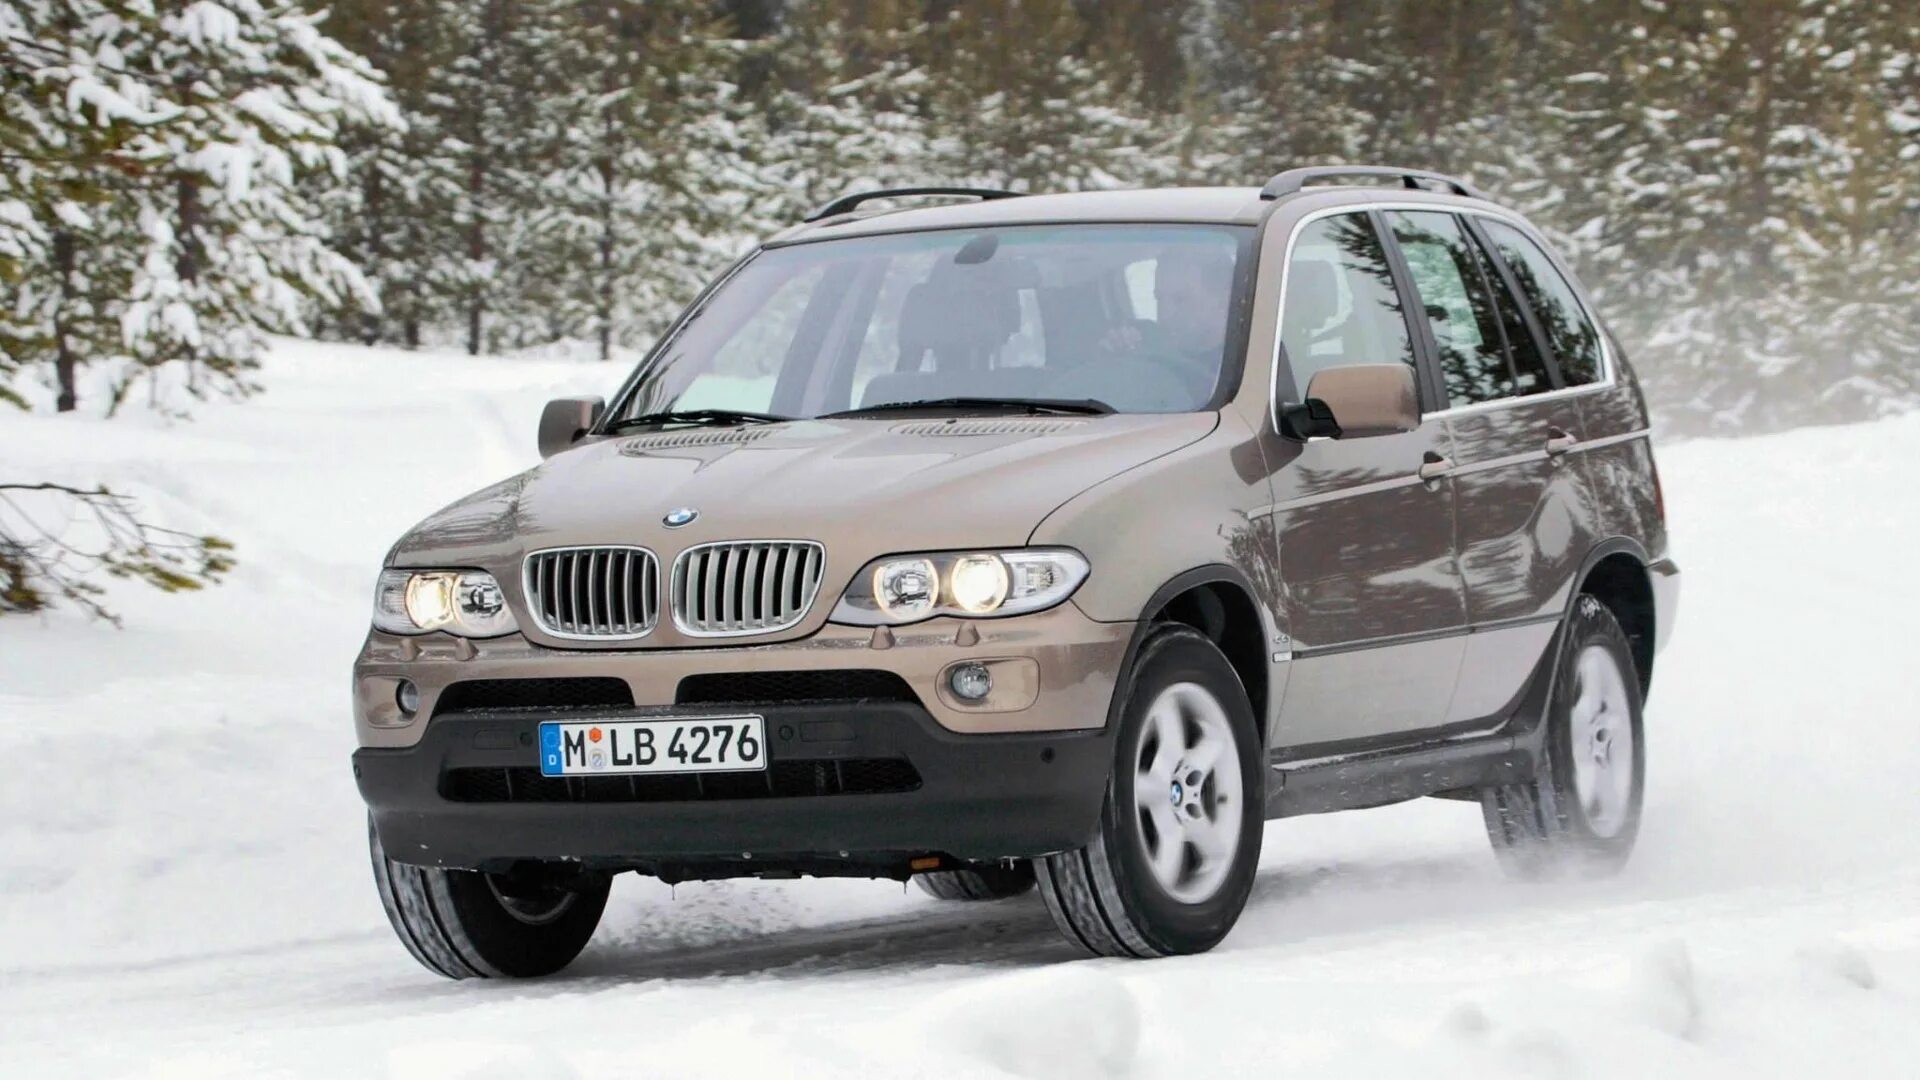 Bmw x5 3.0 бензин. X5 e53. BMW x5 2004. BMW x5 2005. БМВ х5 джип.